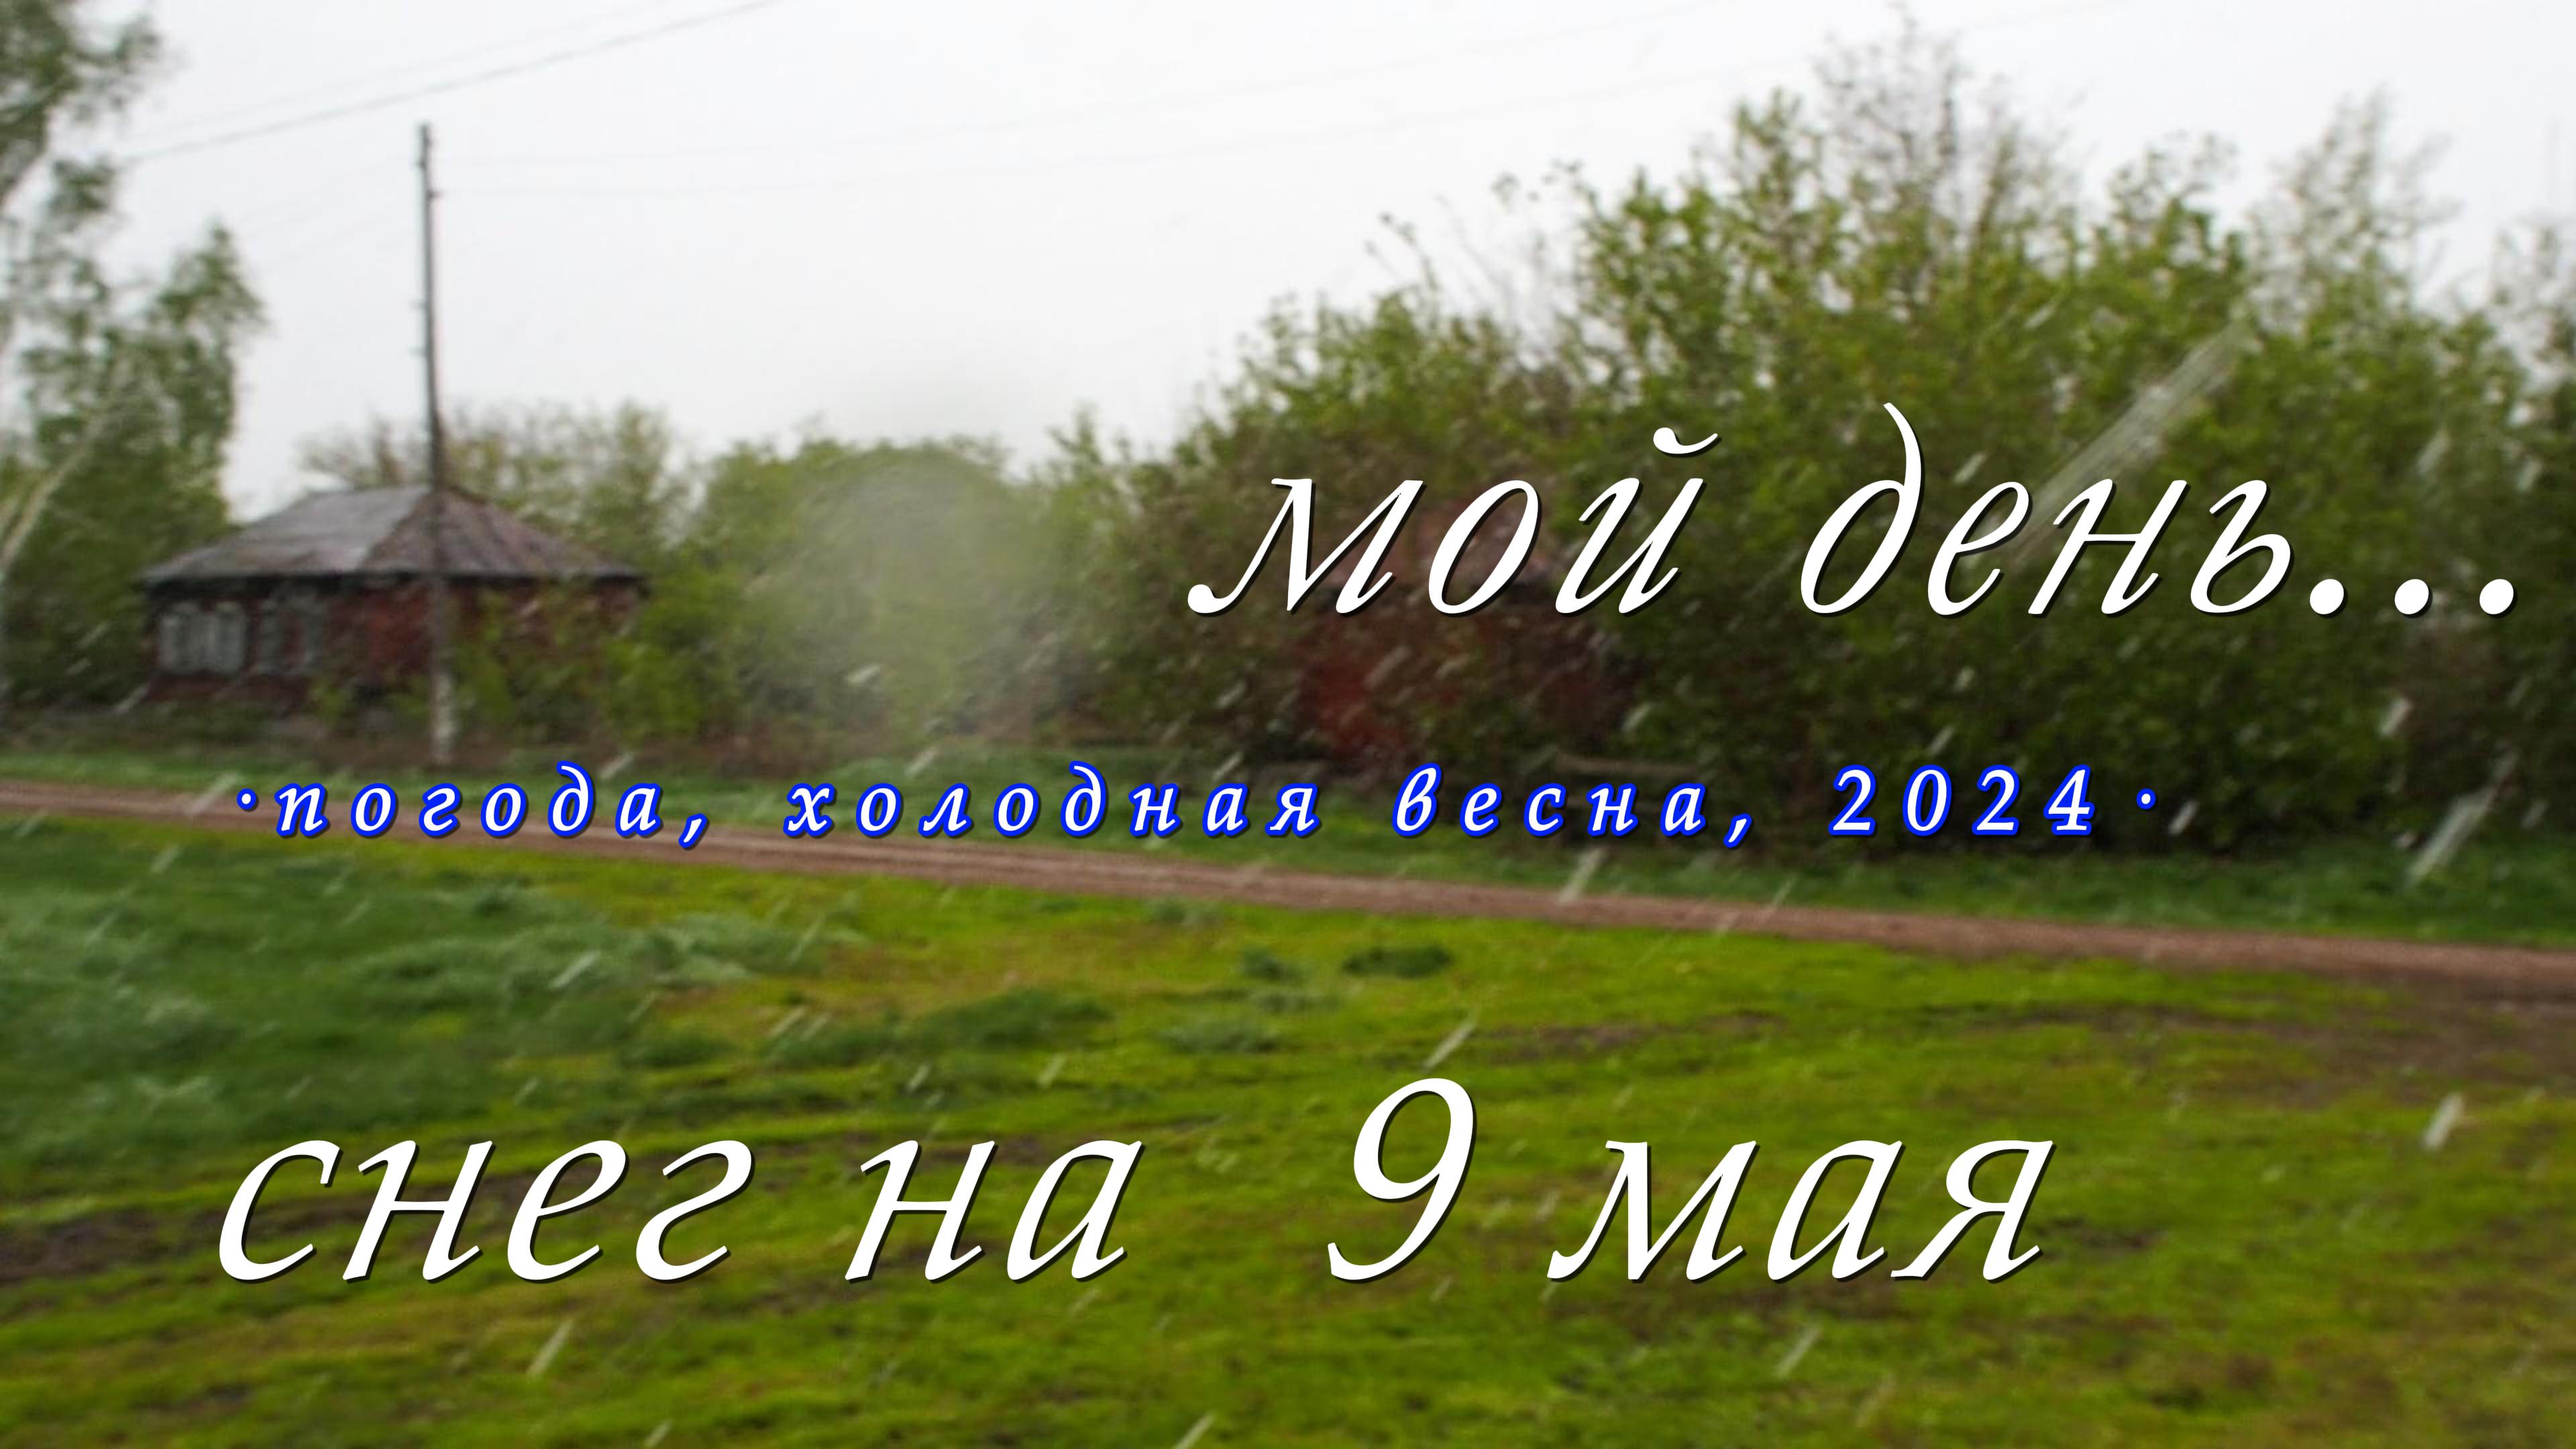 Погода, белое на зелёном, мой день в деревне, весна 2024